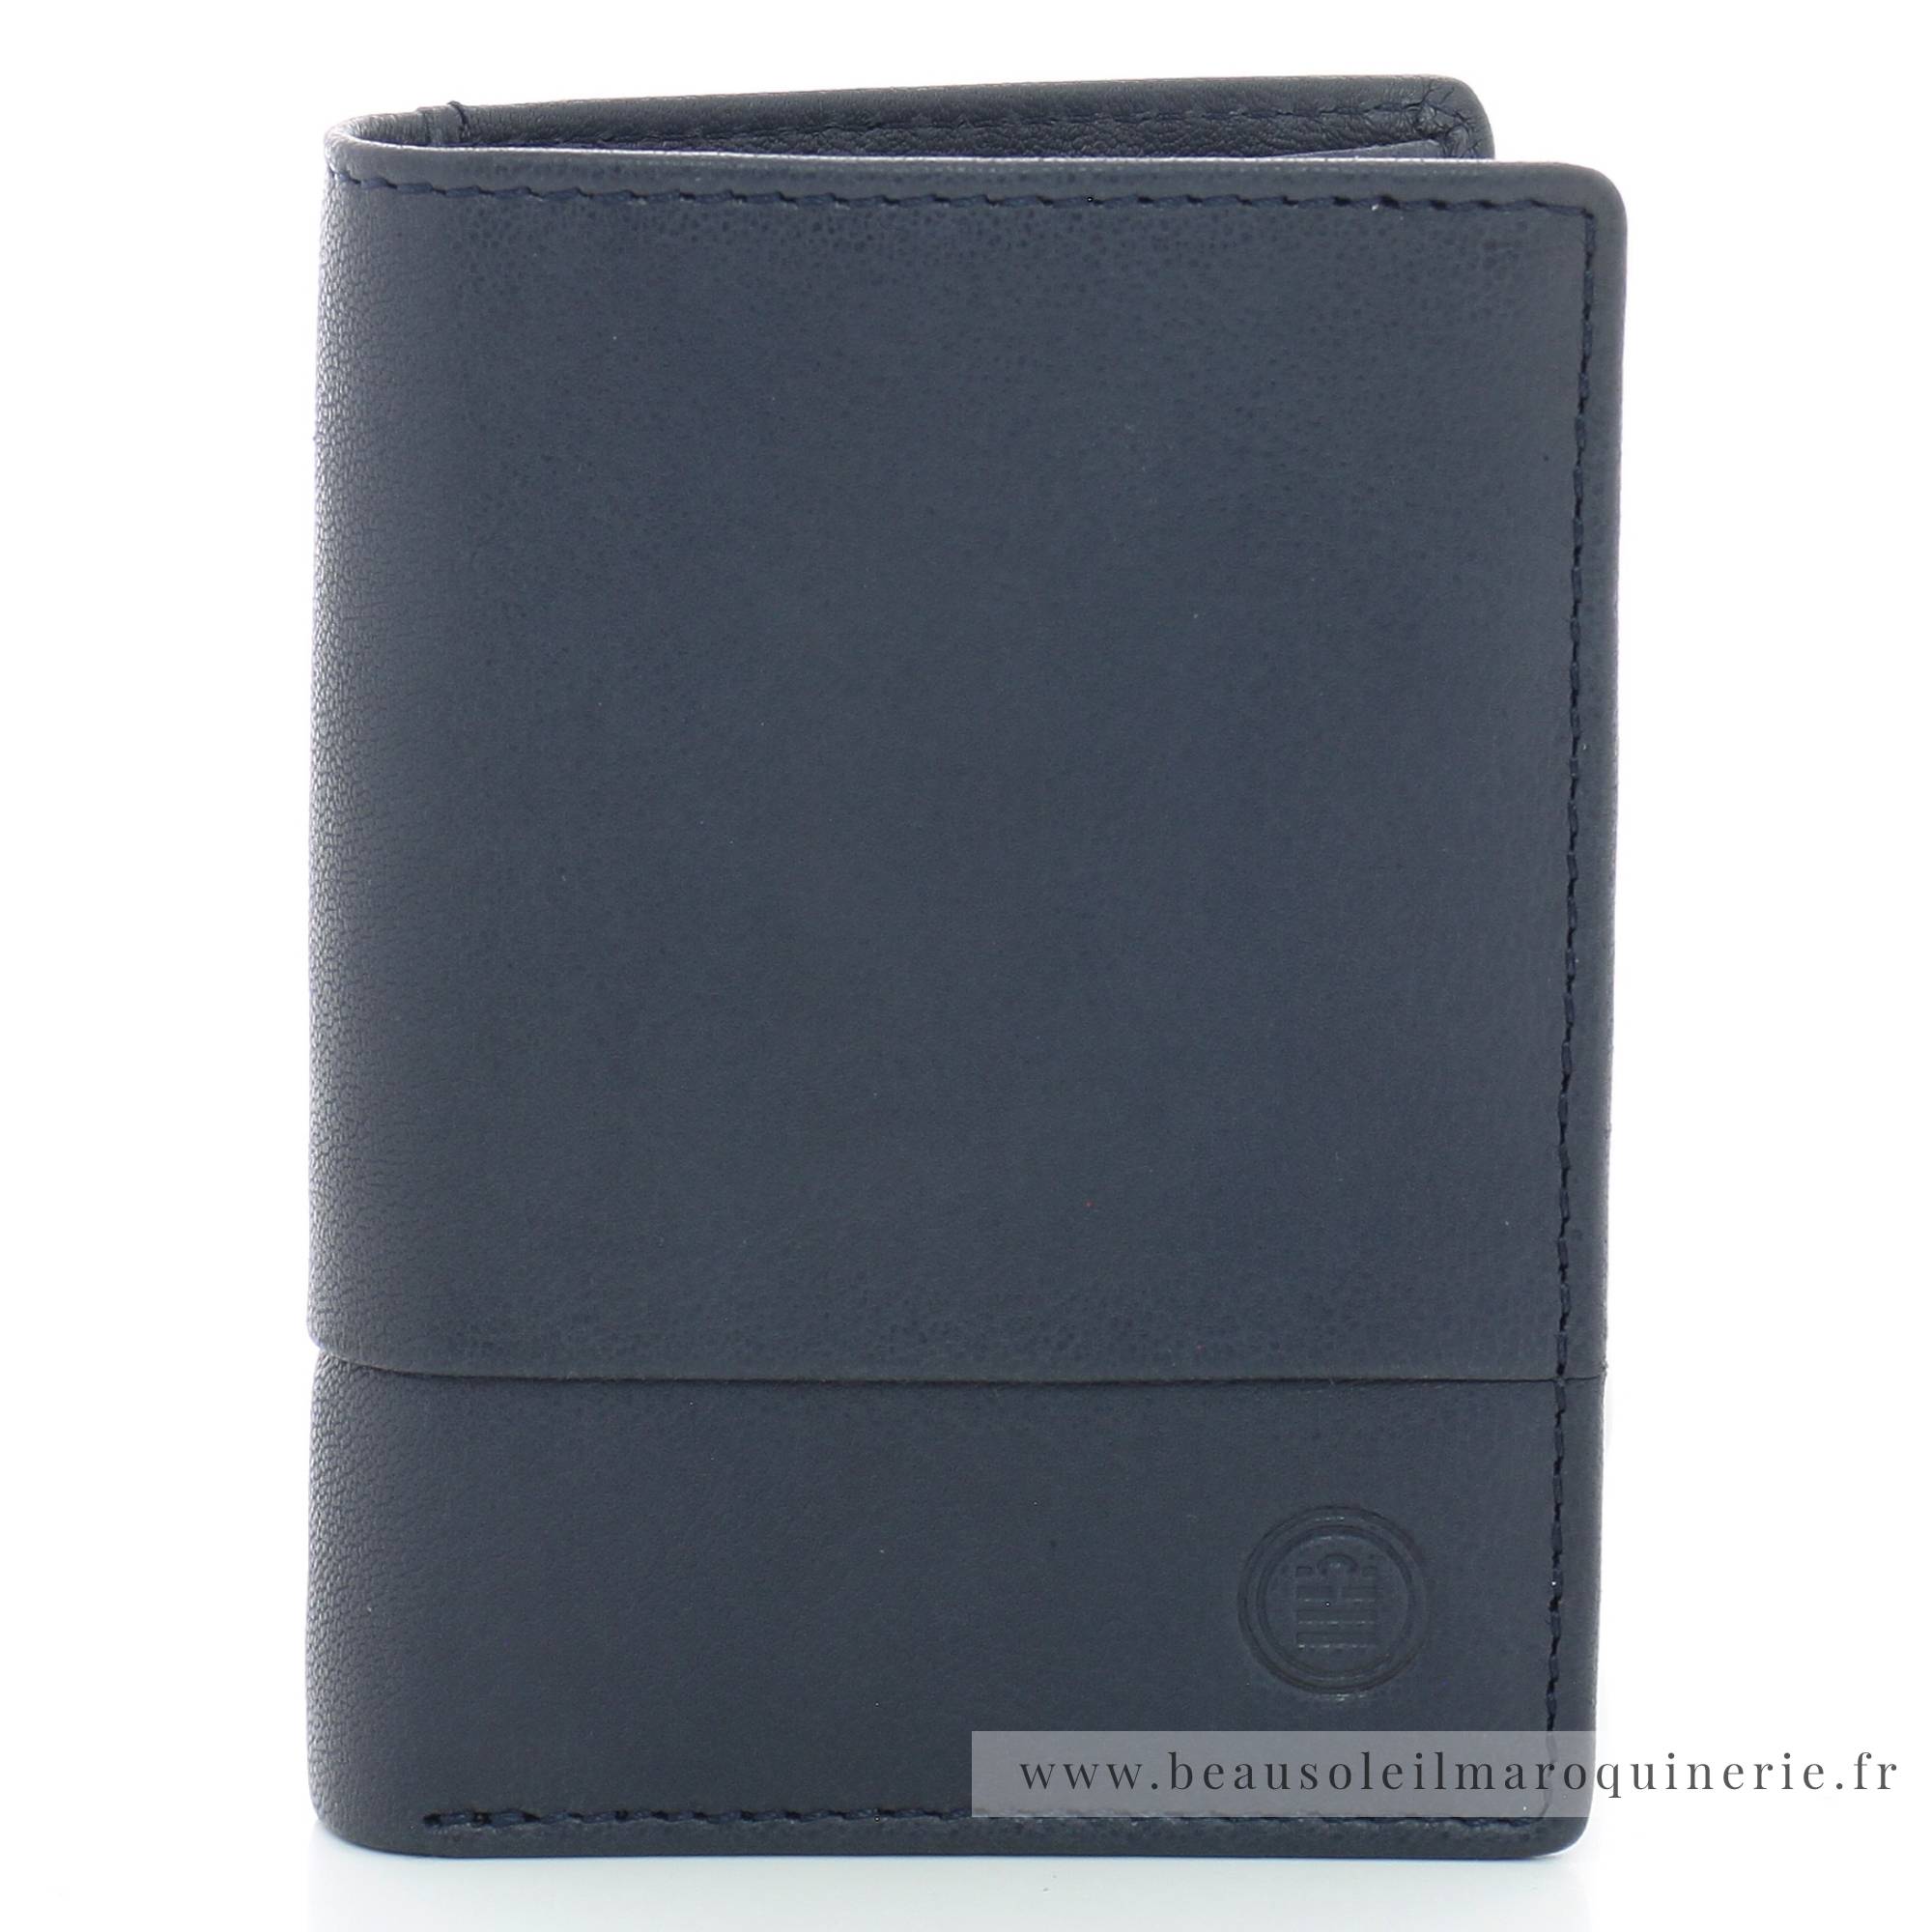 Portefeuille porte-cartes Serge Blanco en cuir ligne Anchorage, référence ANC21056 599 bleu face